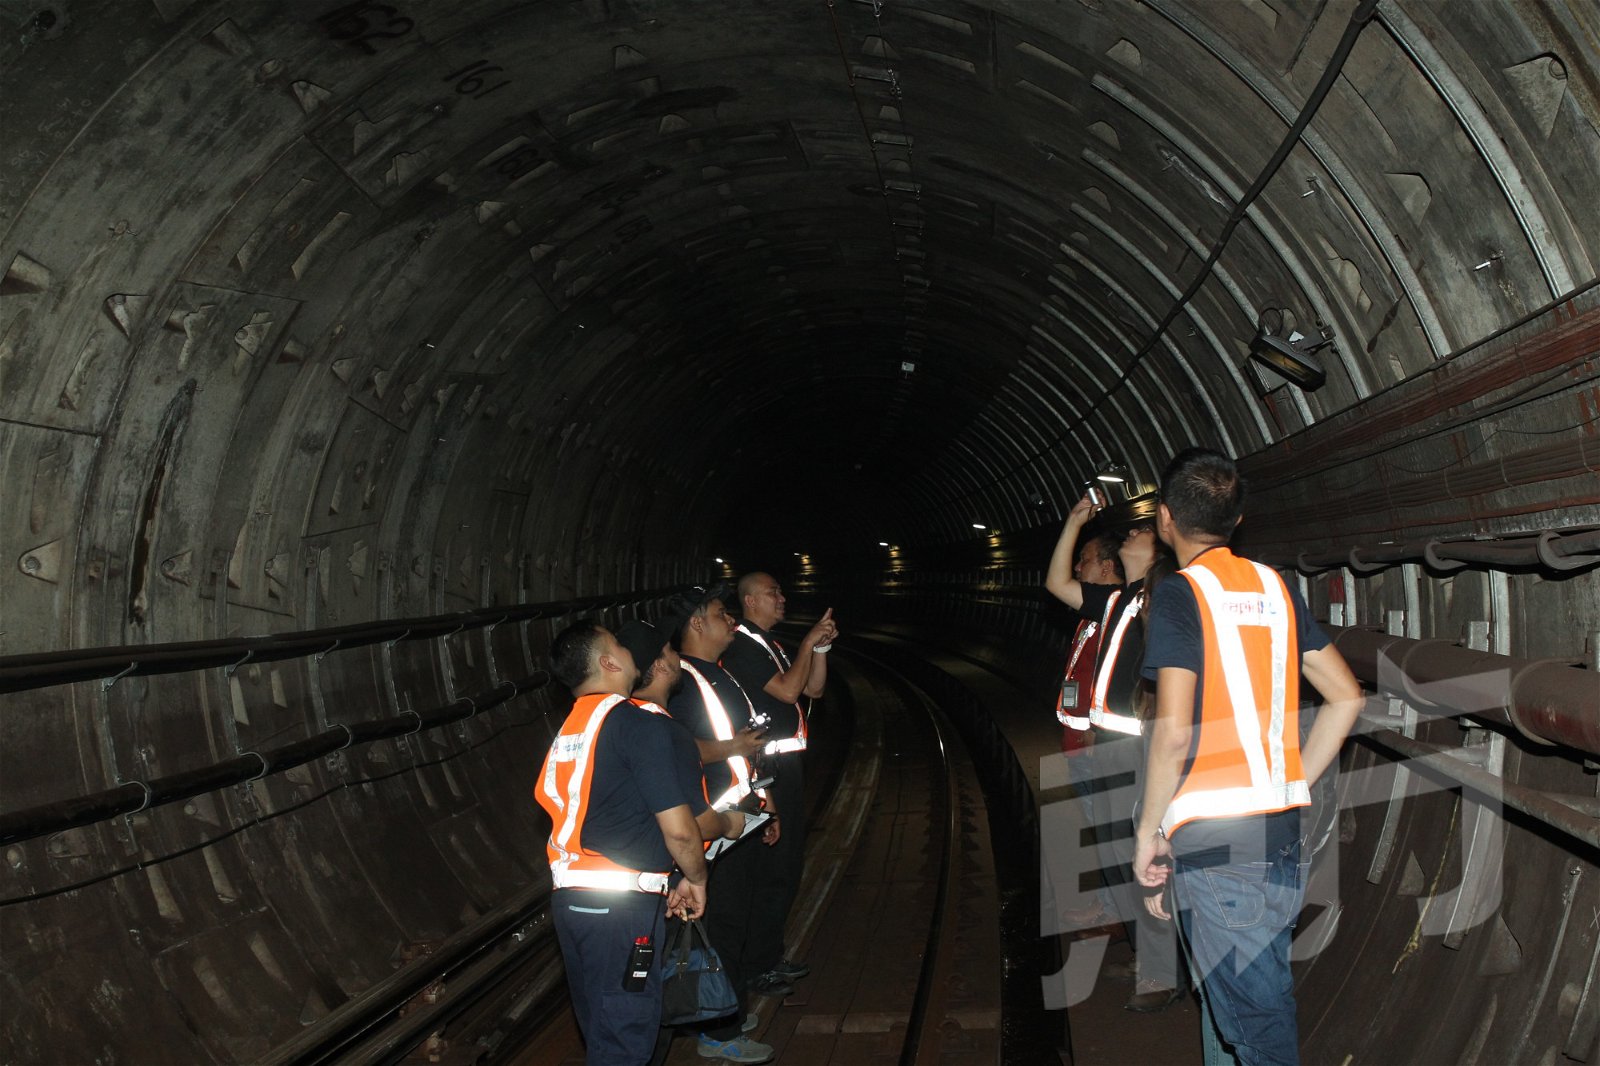 国内轻快铁多数建在路面或高架桥上，不过有5个站点是建立在水源地，轨道上便是来自巴生河以及鹅唛河源源不绝的河水。其中包括占美清真寺站、安邦广场站、城中城站、金马站和甘榜峇鲁站。执勤人员需检查隧道是否有“不正常”渗水并及时修补；当遇到火患时，隧道两侧也设有高马力的抽气机，能有效把浓烟排到其它车站的通风口。（摄影：田咏逸）